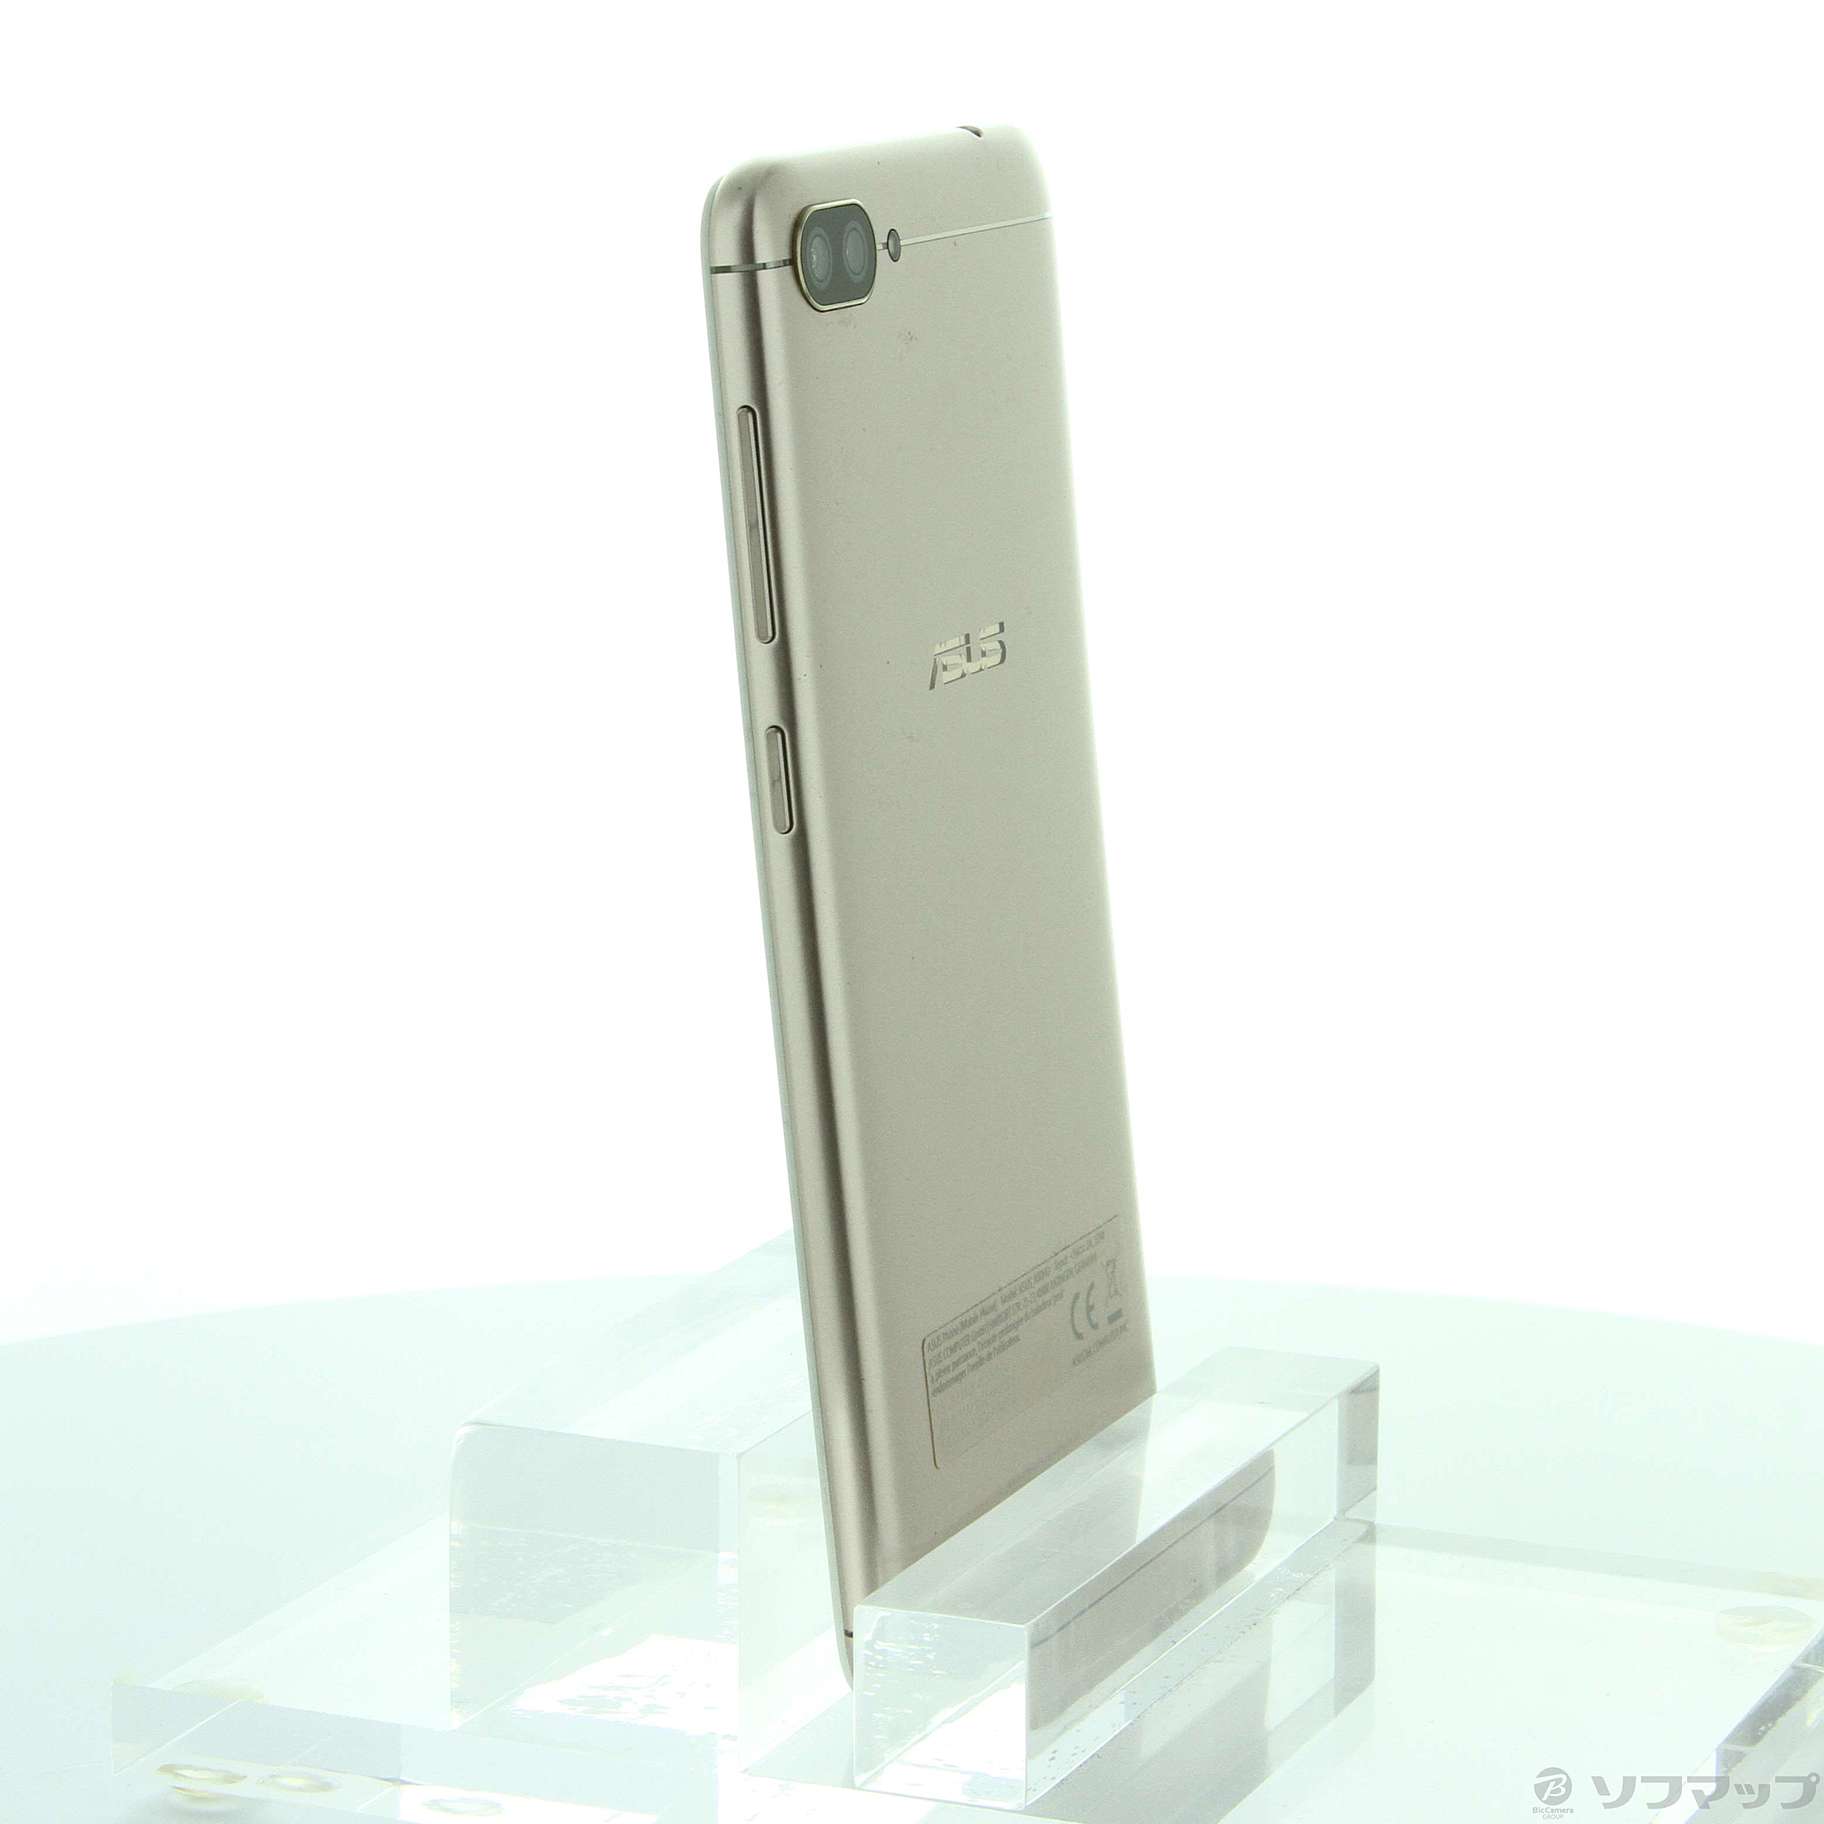 中古】ZenFone 4 Max 32GB サンライトゴールド ZC520KL-GD32S3 SIM